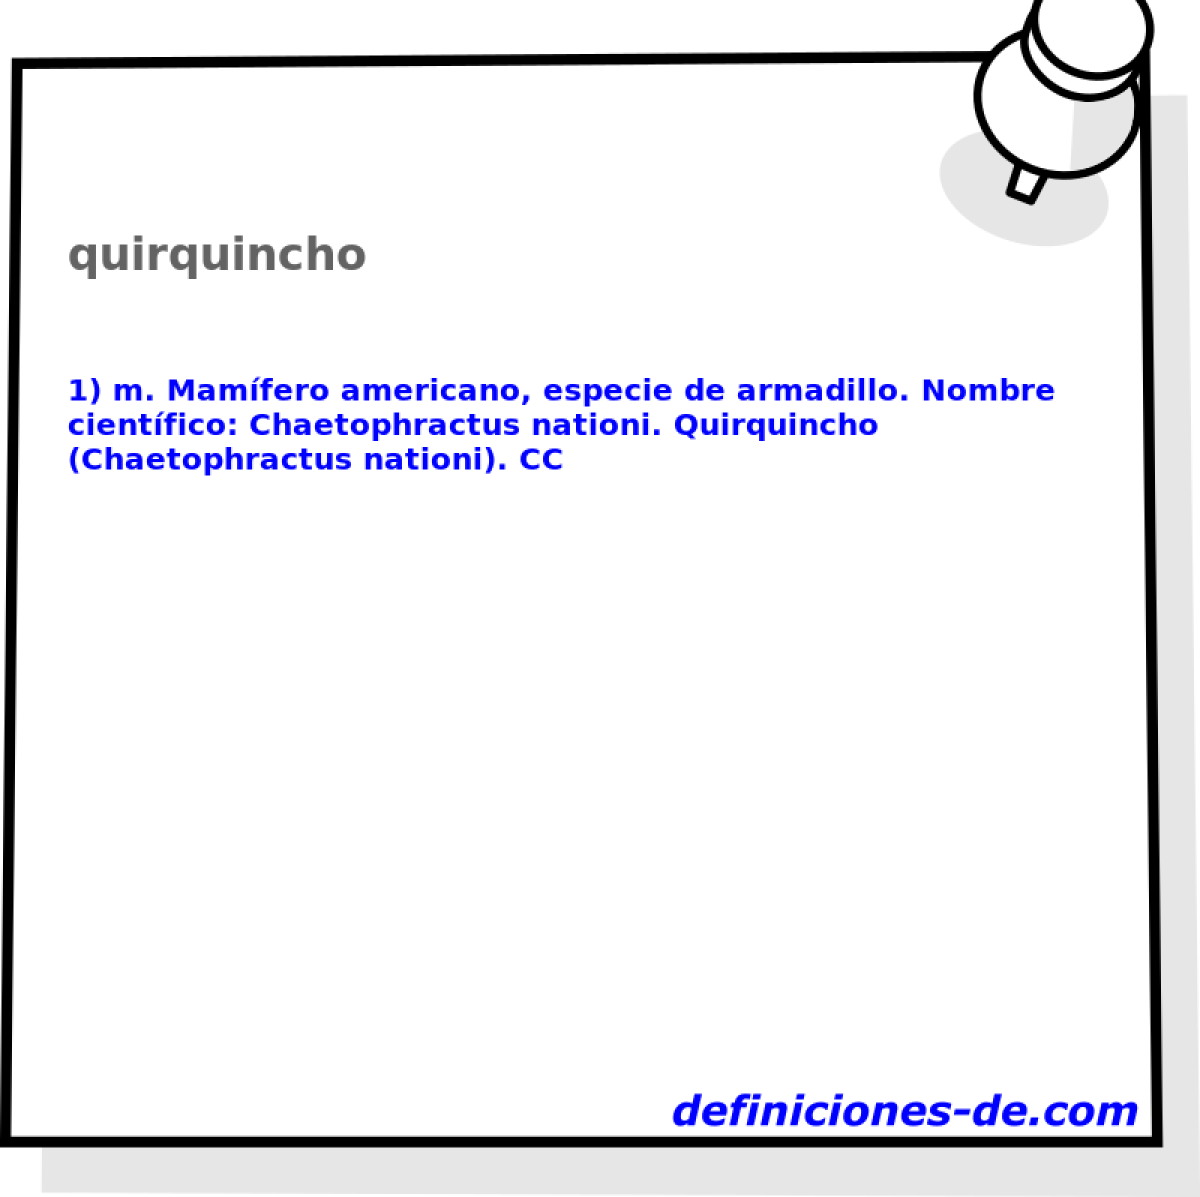 quirquincho 